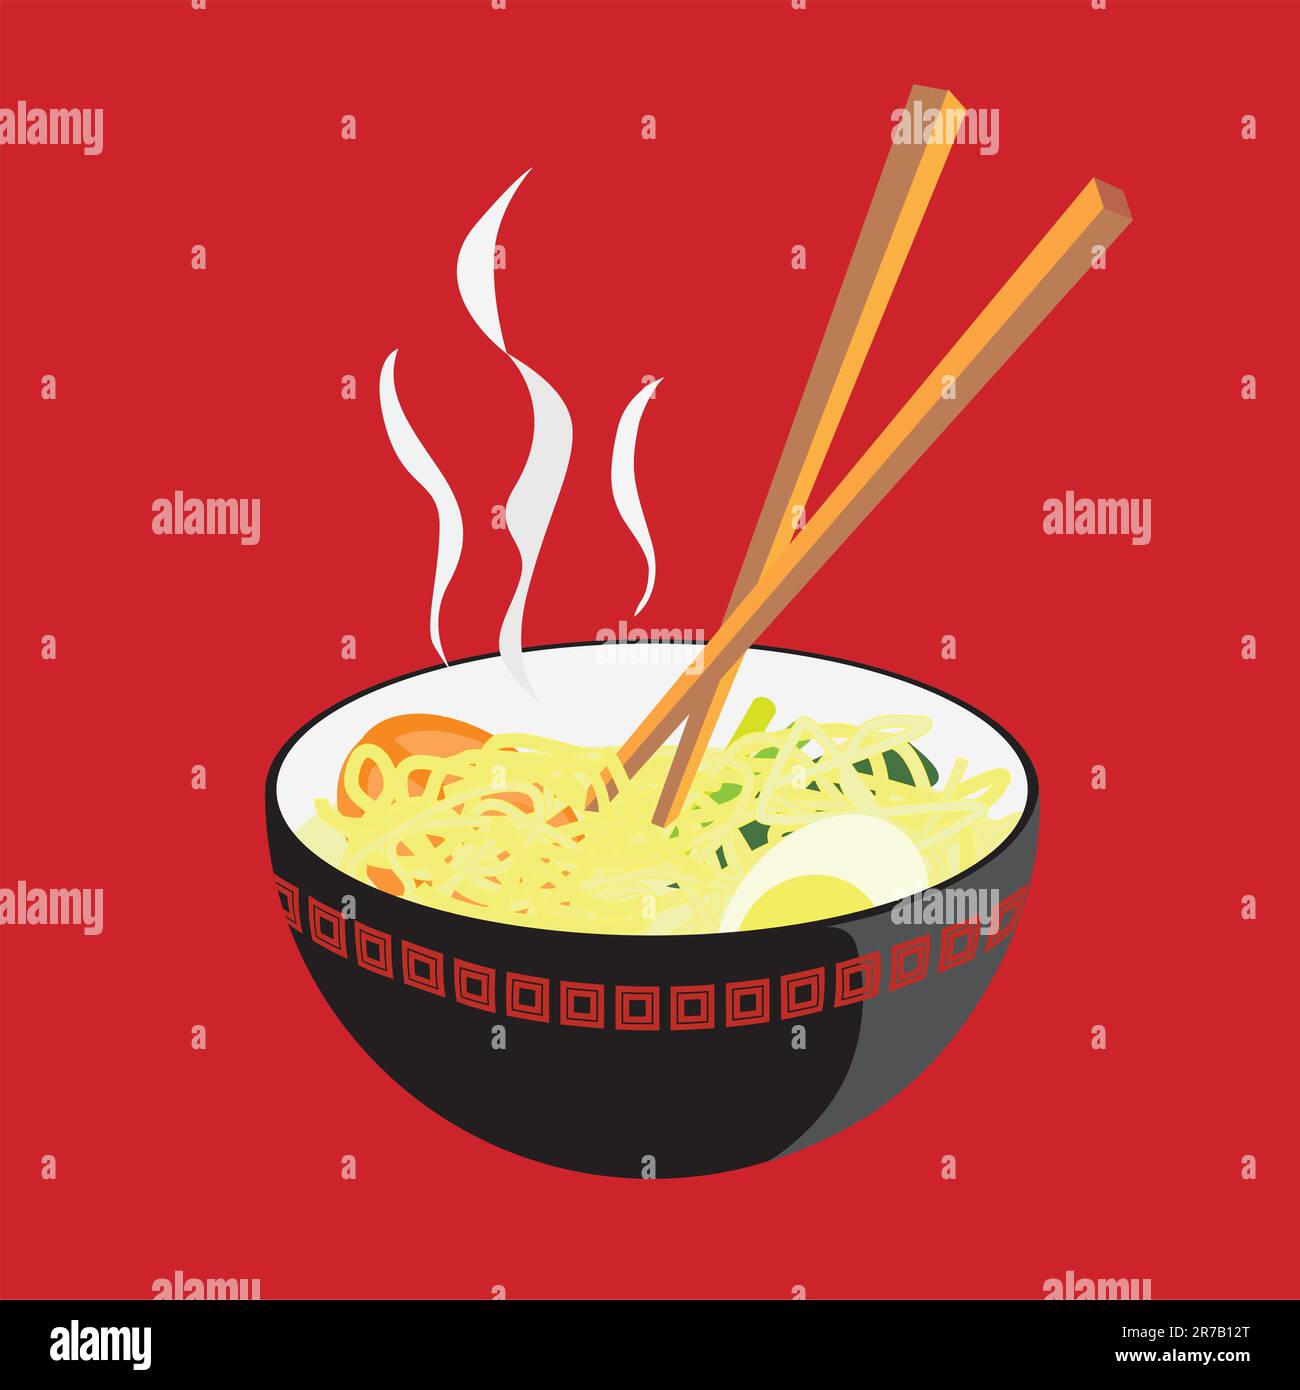 Une illustration vectorielle d'un bol de nouilles chaudes, avec quelques tranches de tomate, un œuf et quelques verts de moutarde… Hmmm… Délicieux ! Illustration de Vecteur